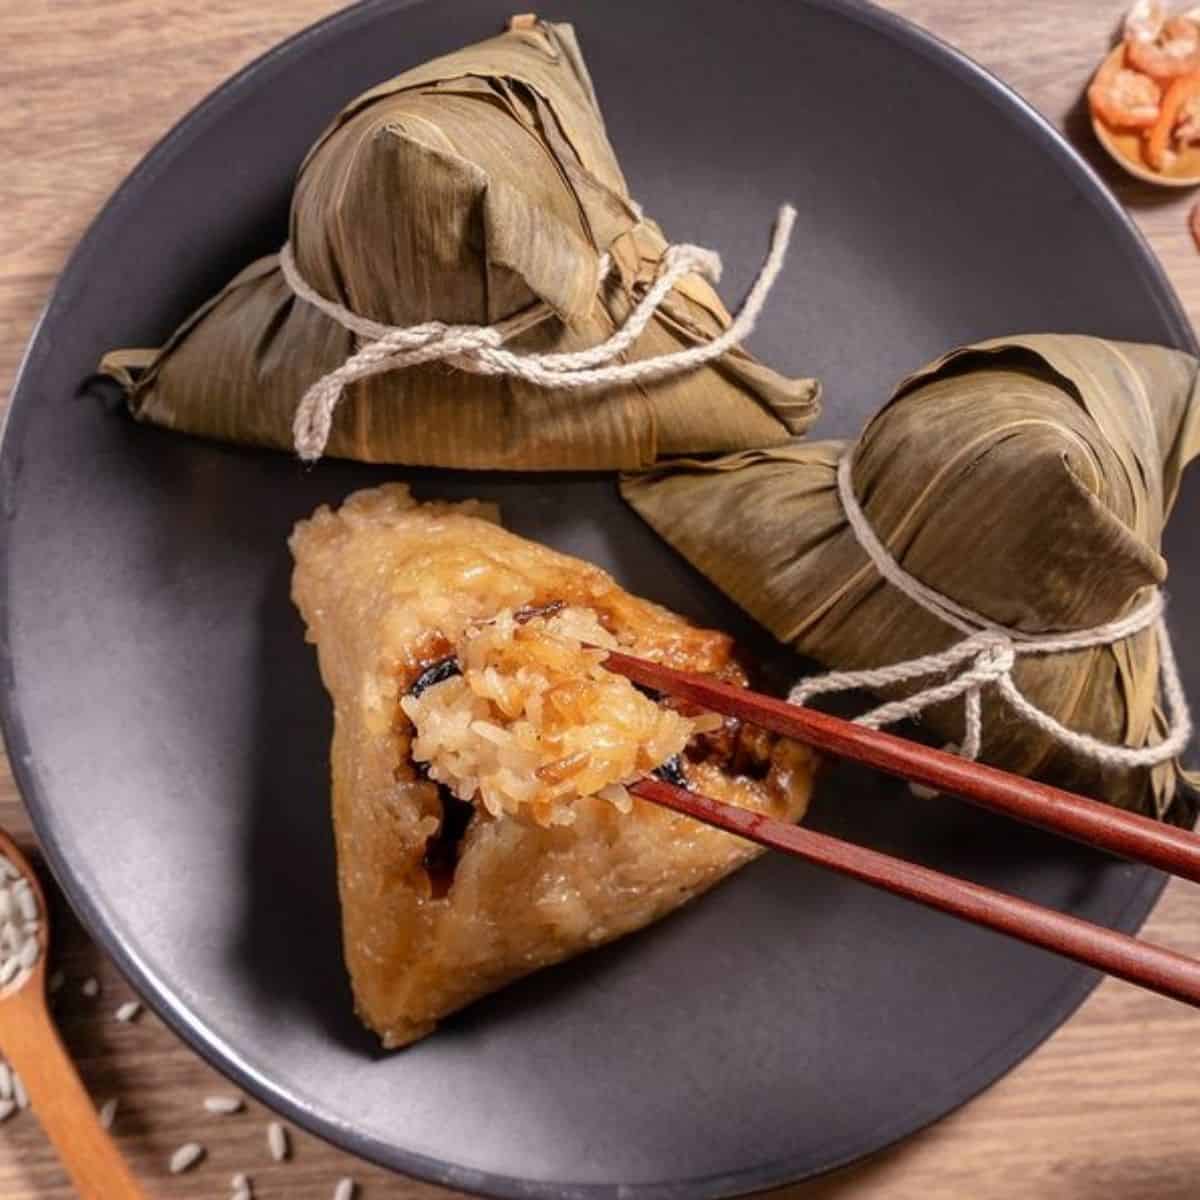 zongzi rice dumplings in plate